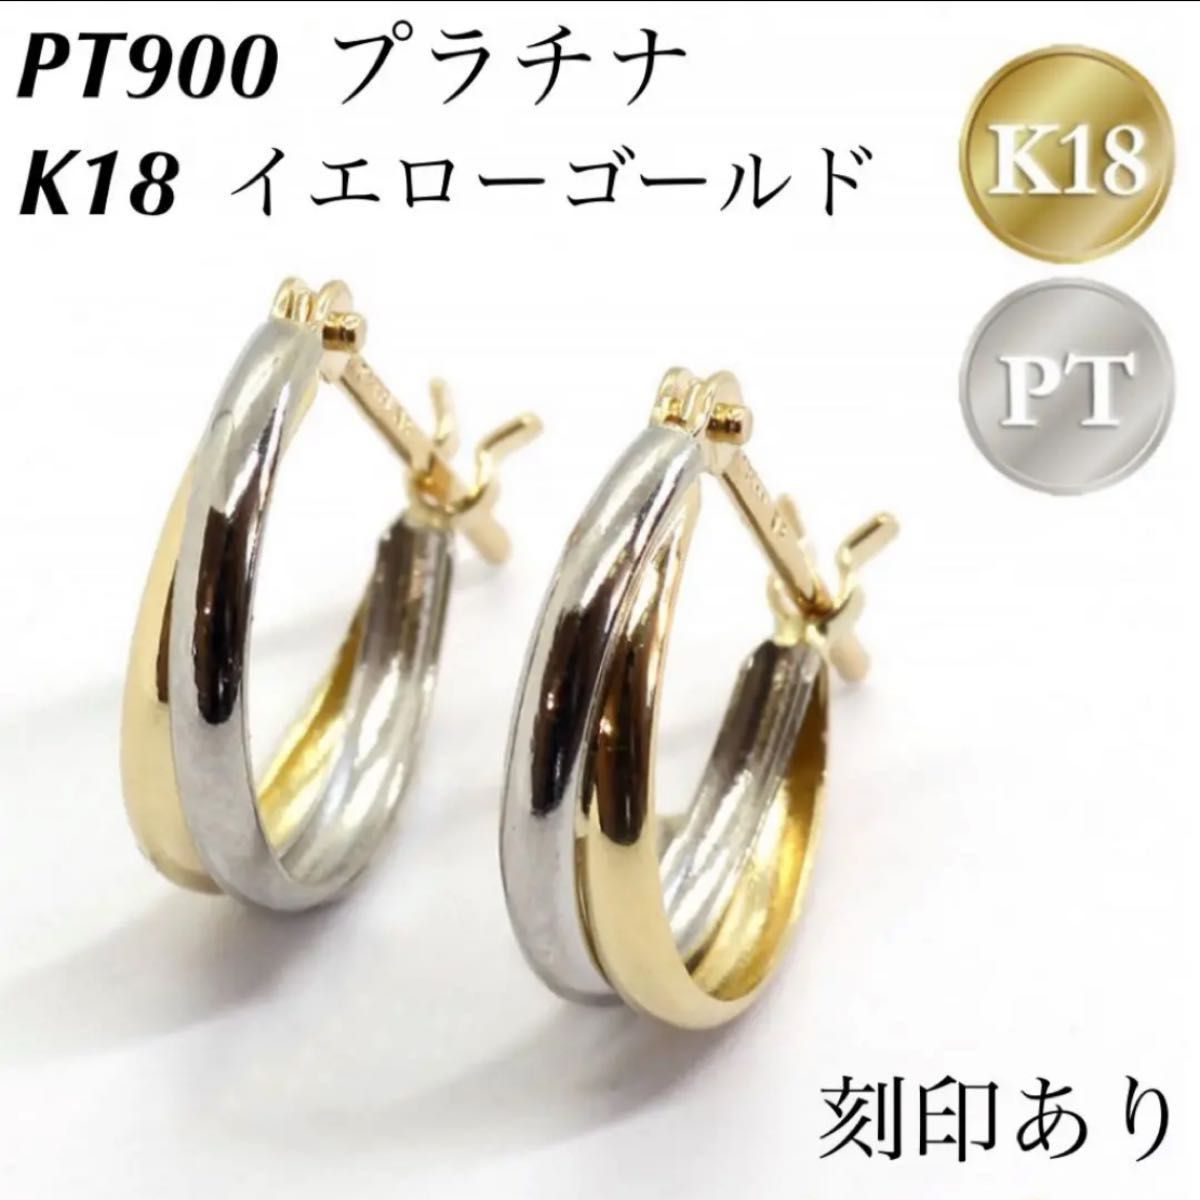 新品 PT900 プラチナ × K18 イエローゴールド フープ 18金ピアス 刻印あり 上質 日本製 ペア